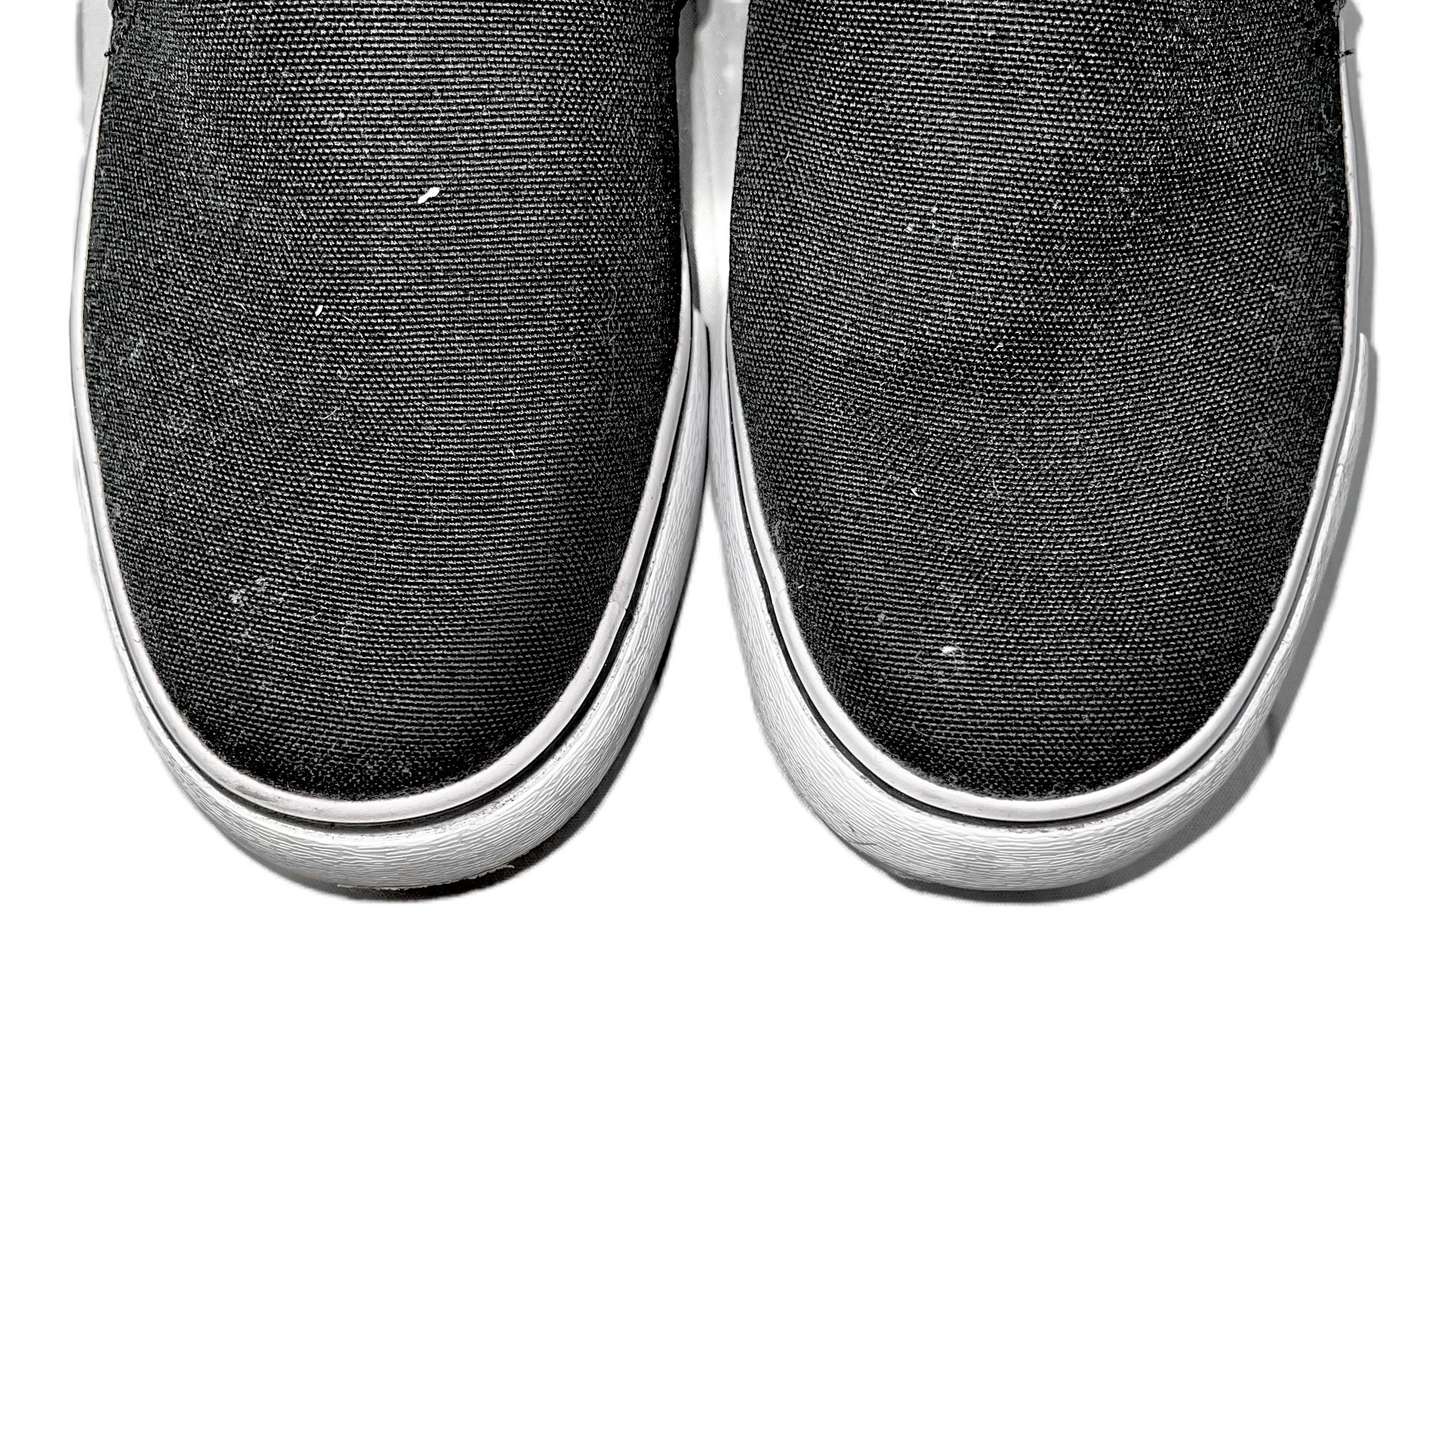 Black Shoes Flats By Vans, Size: 10